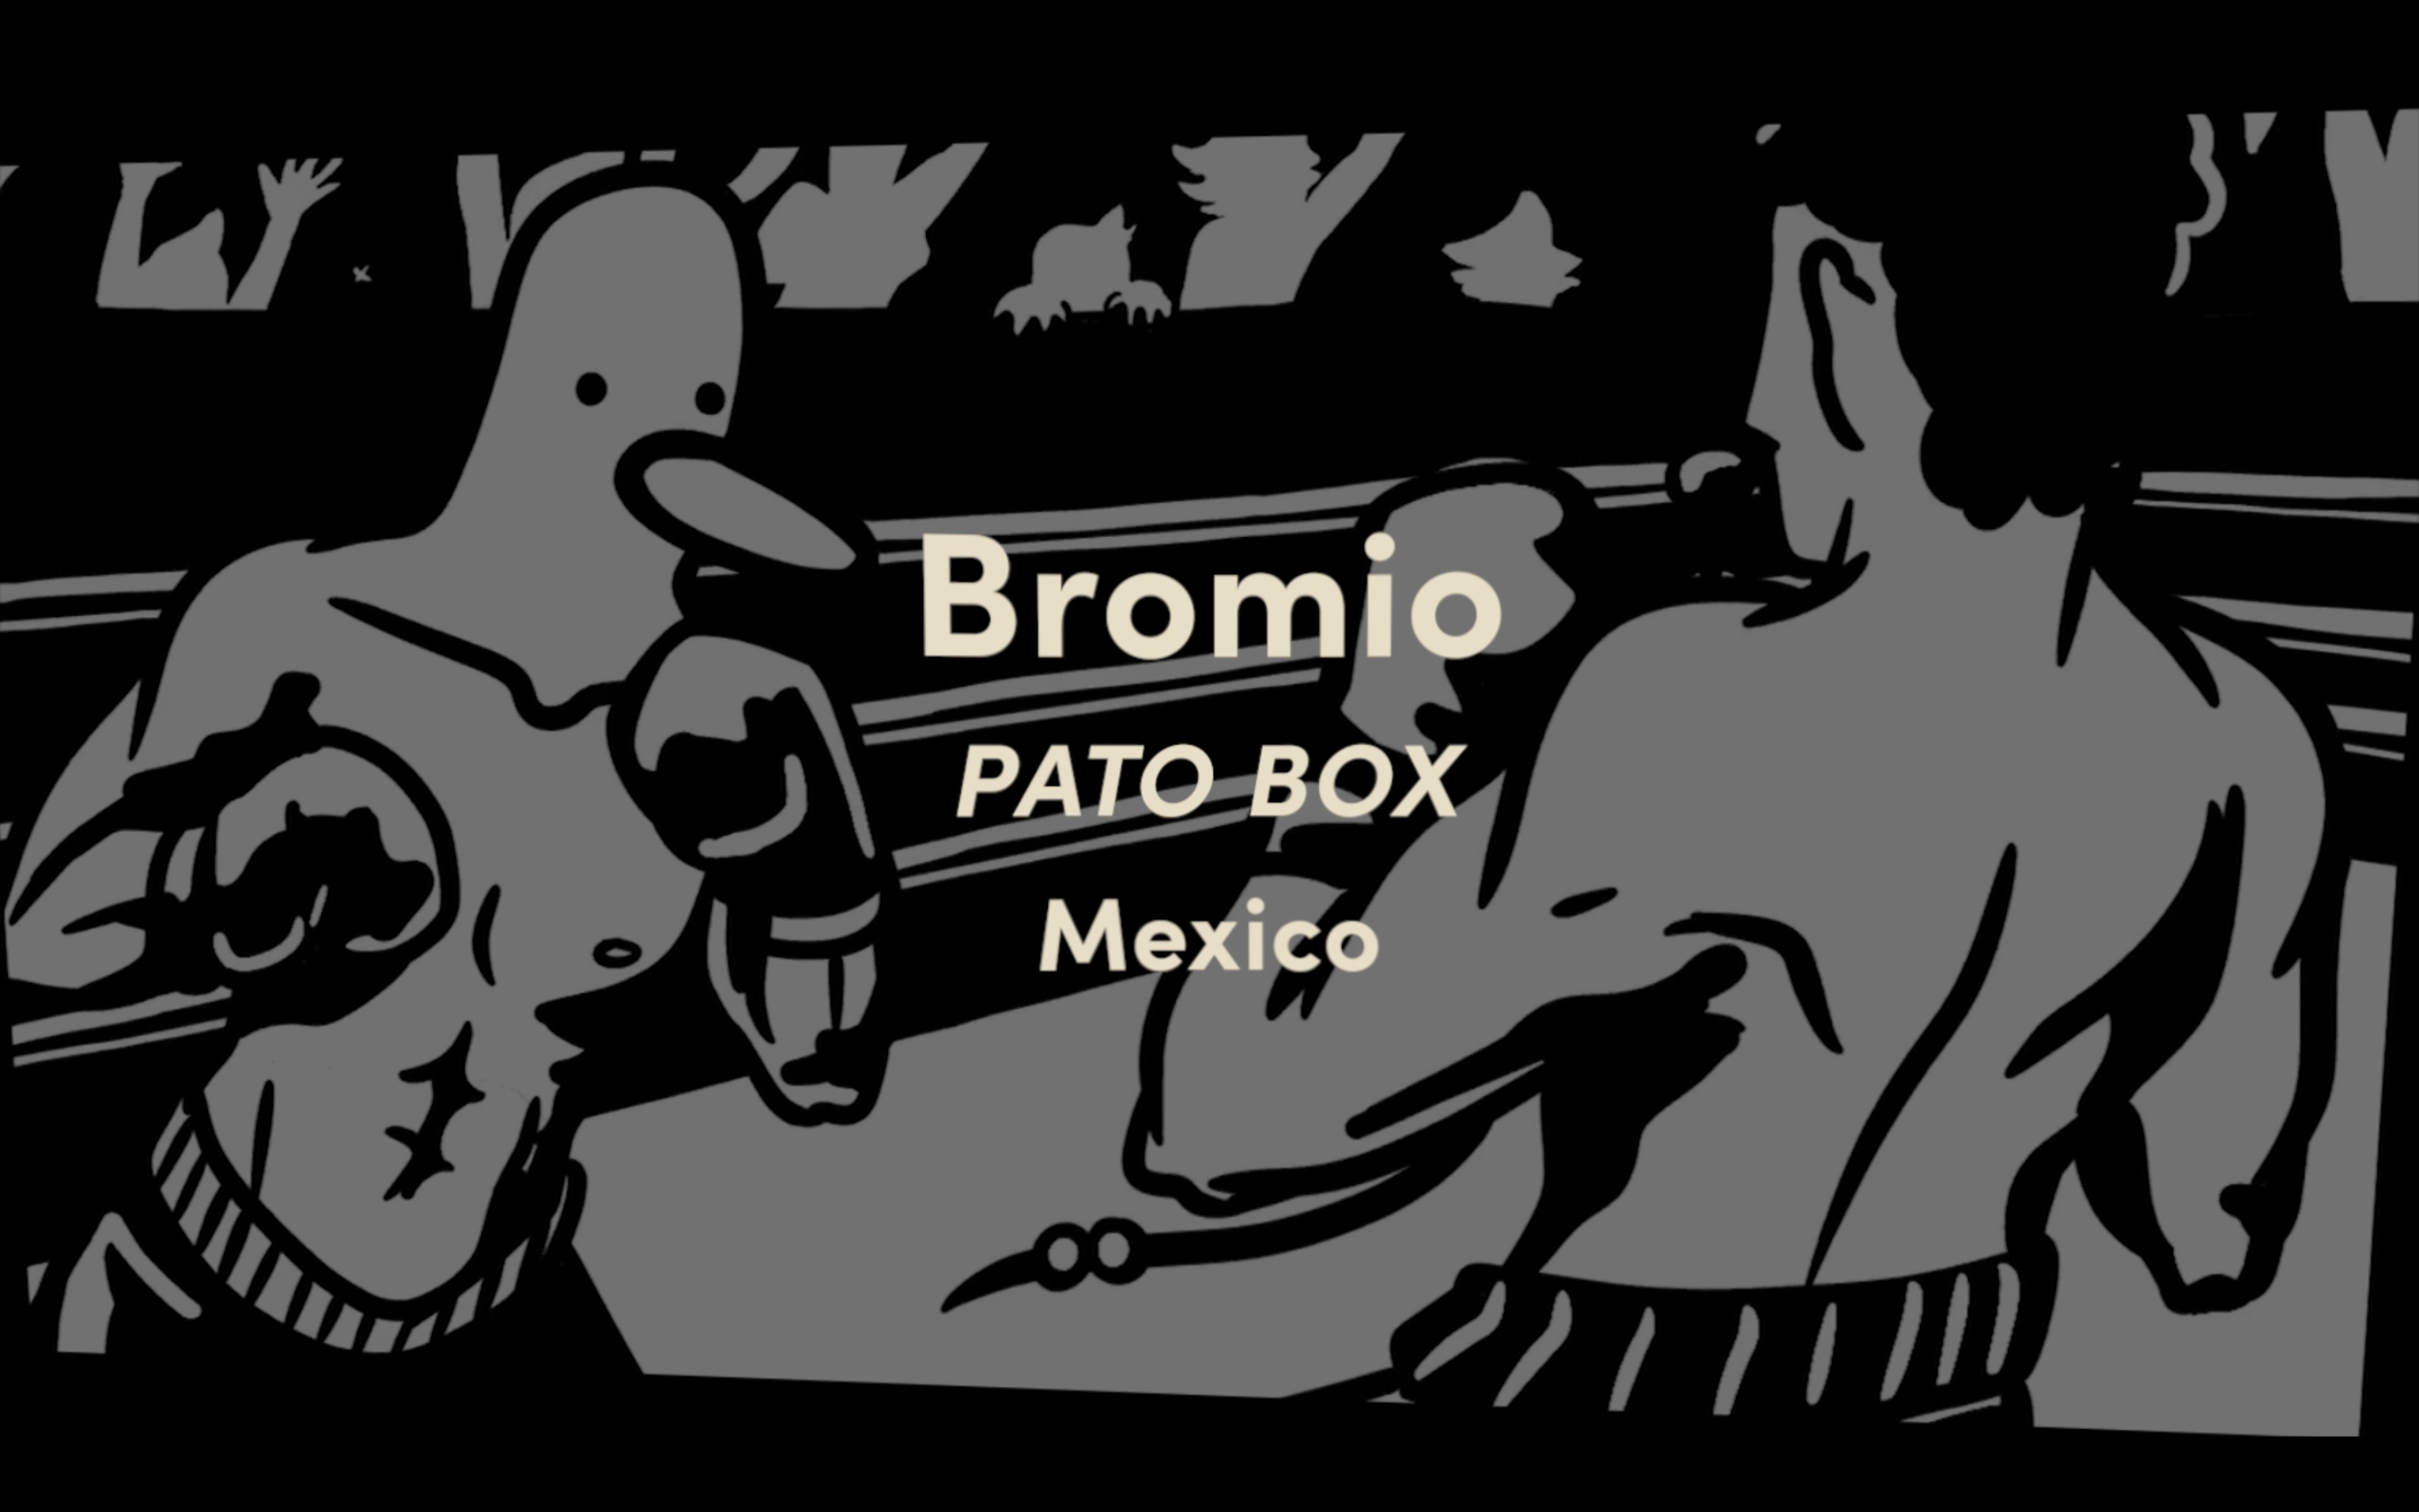 Bromio Pato Box Mexico